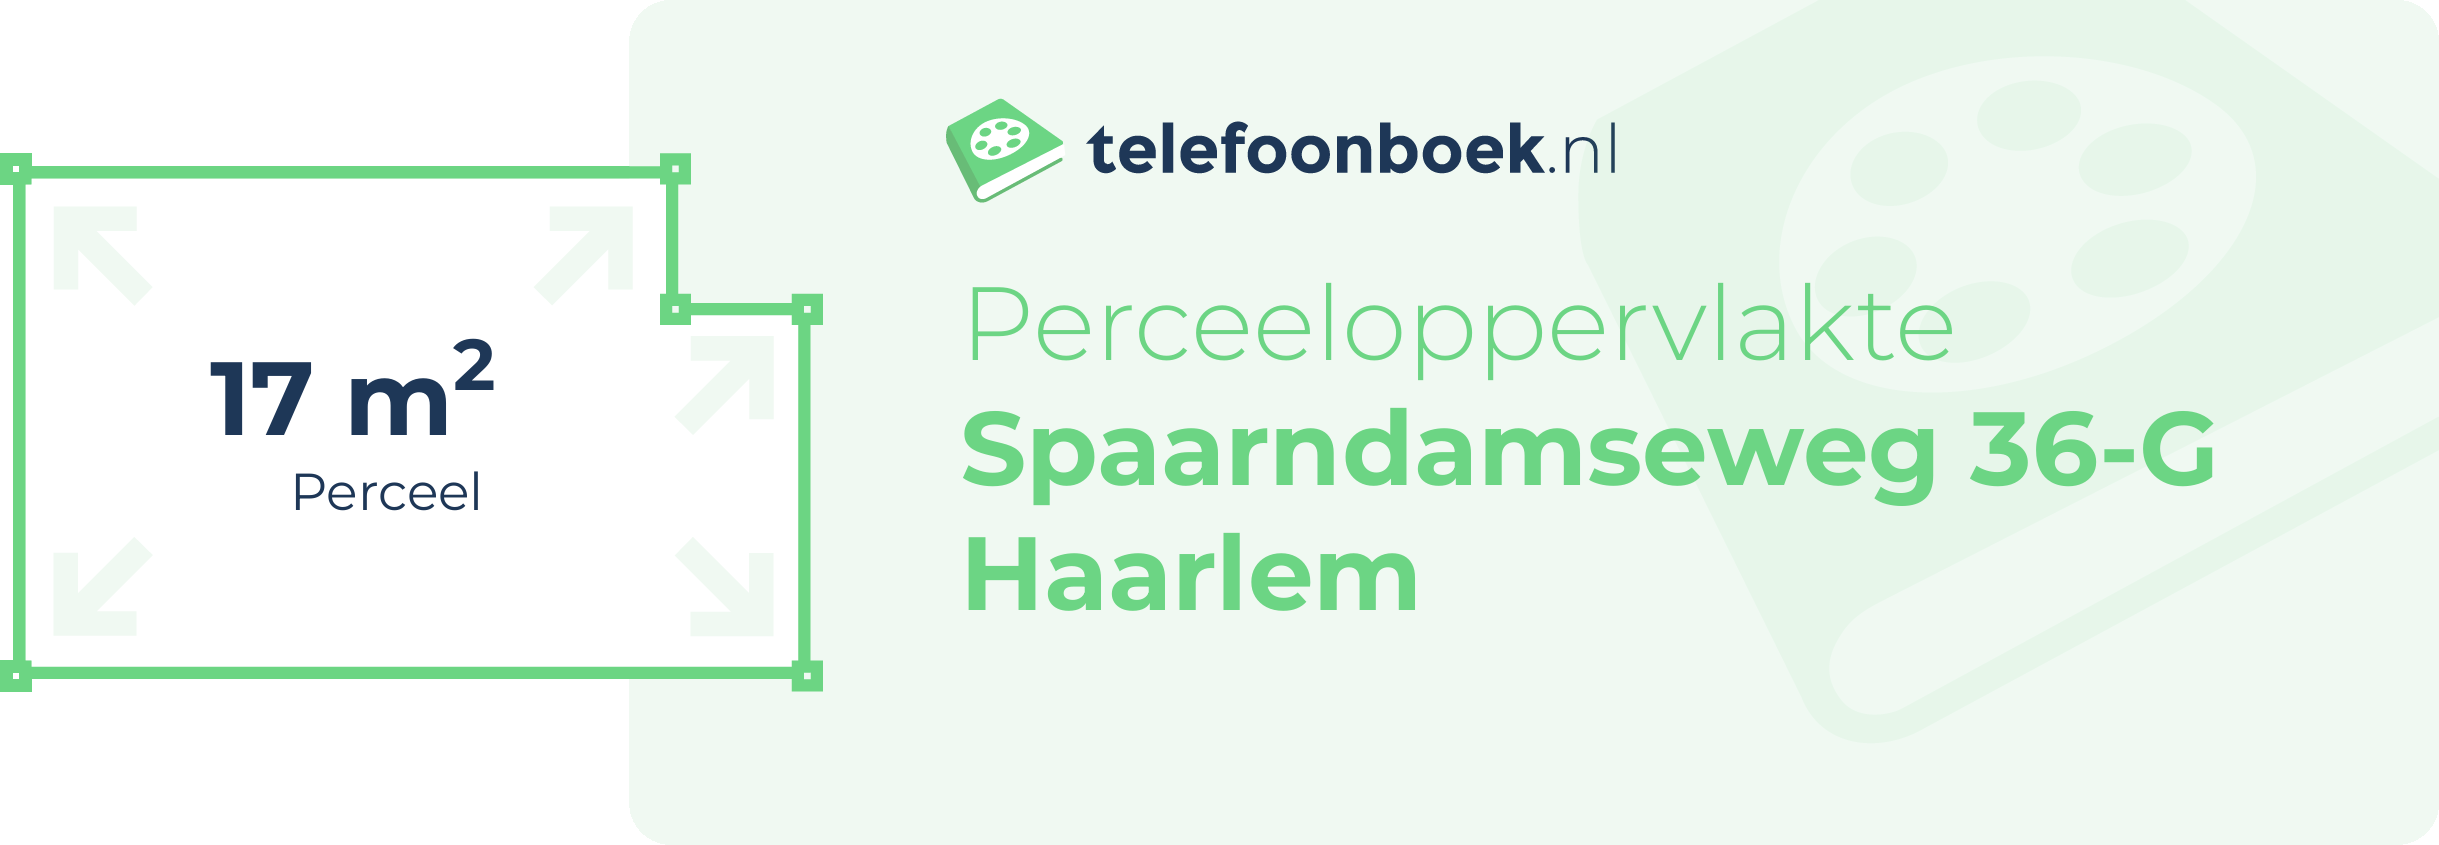 Perceeloppervlakte Spaarndamseweg 36-G Haarlem